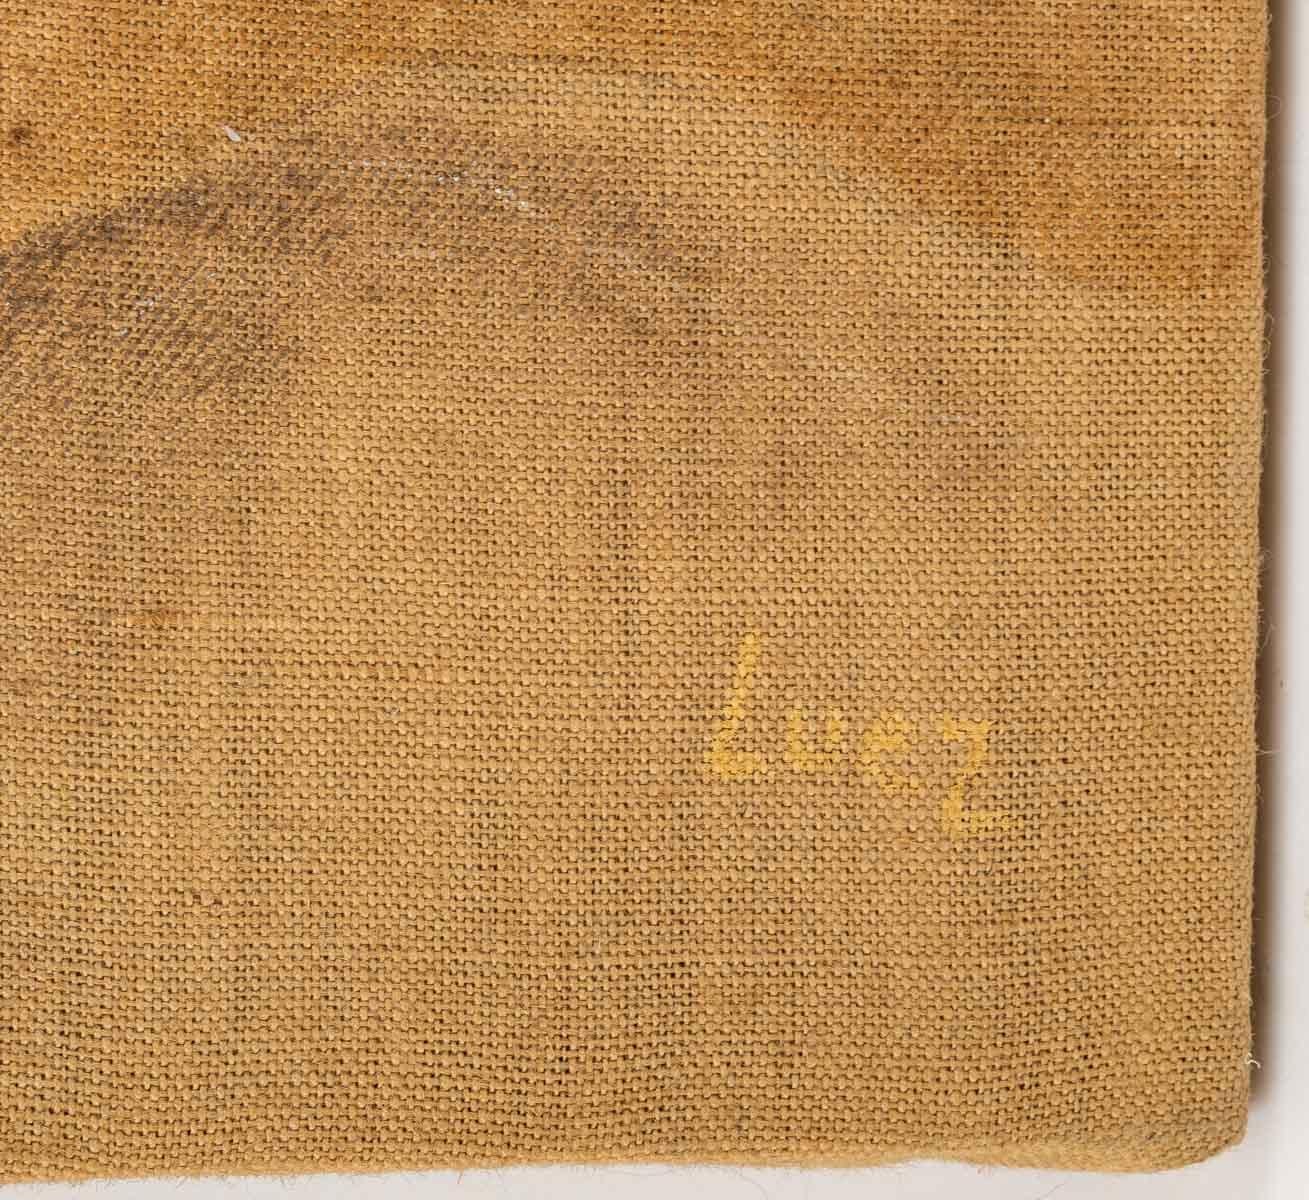 Nude, oil on canvas, 20th century.
School of Paris, Evelyne Luez.
Measures: H: 55 cm, W: 81 cm.